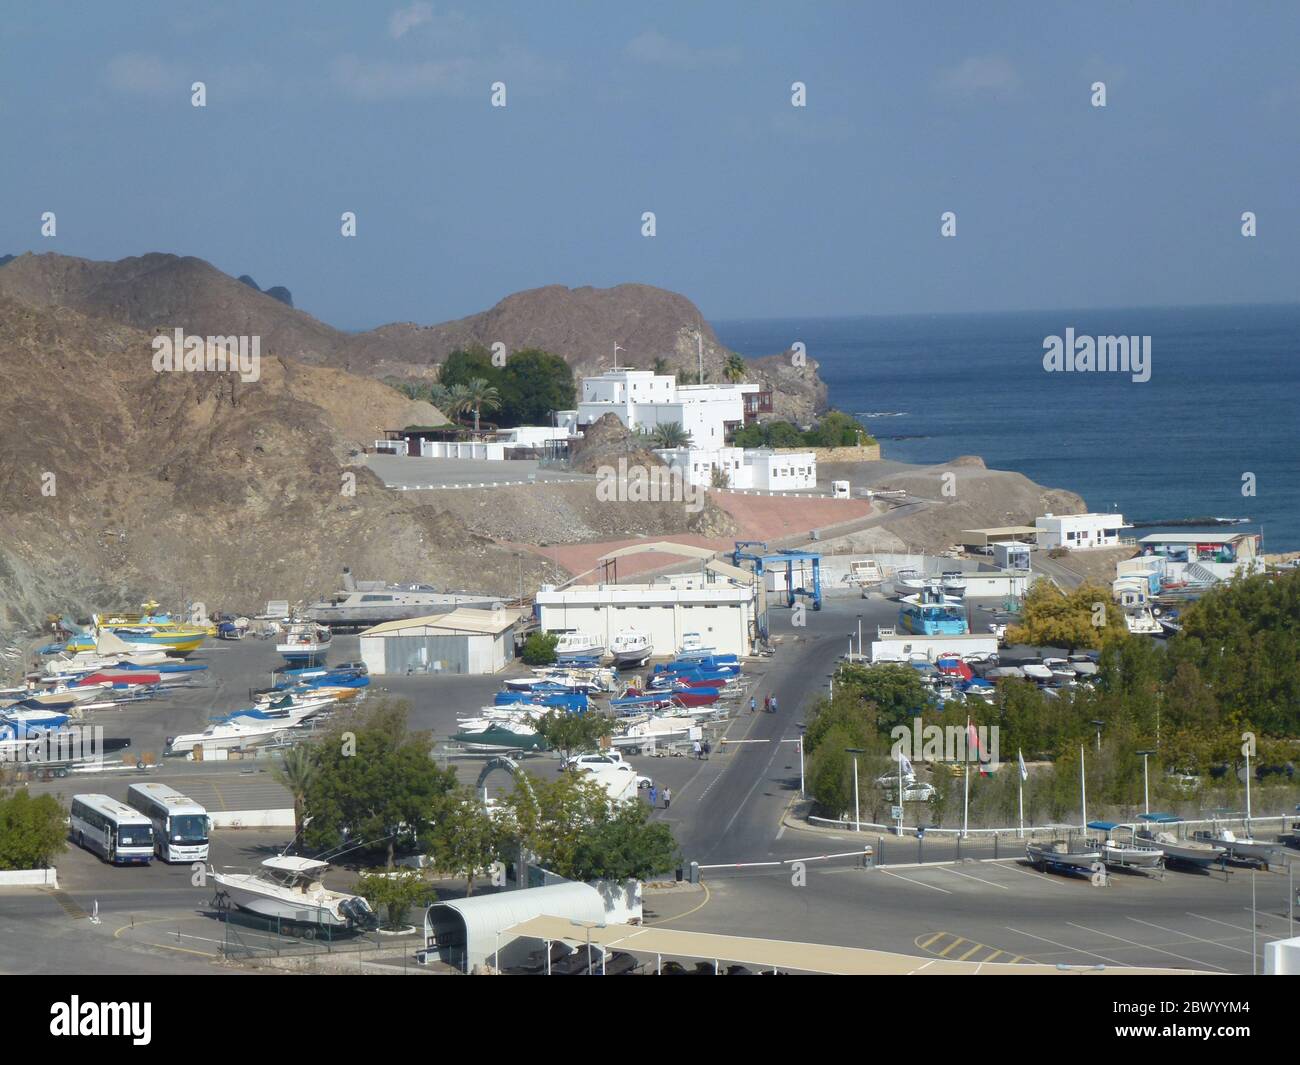 Mascate, capitale portuale dell'Oman, si trova sul Golfo dell'Oman  circondato da montagne e deserto. Oman, ufficialmente Sultanato dell'Oman, è  un paese della costa sud-orientale della penisola araba nell'Asia  occidentale. Con una storia